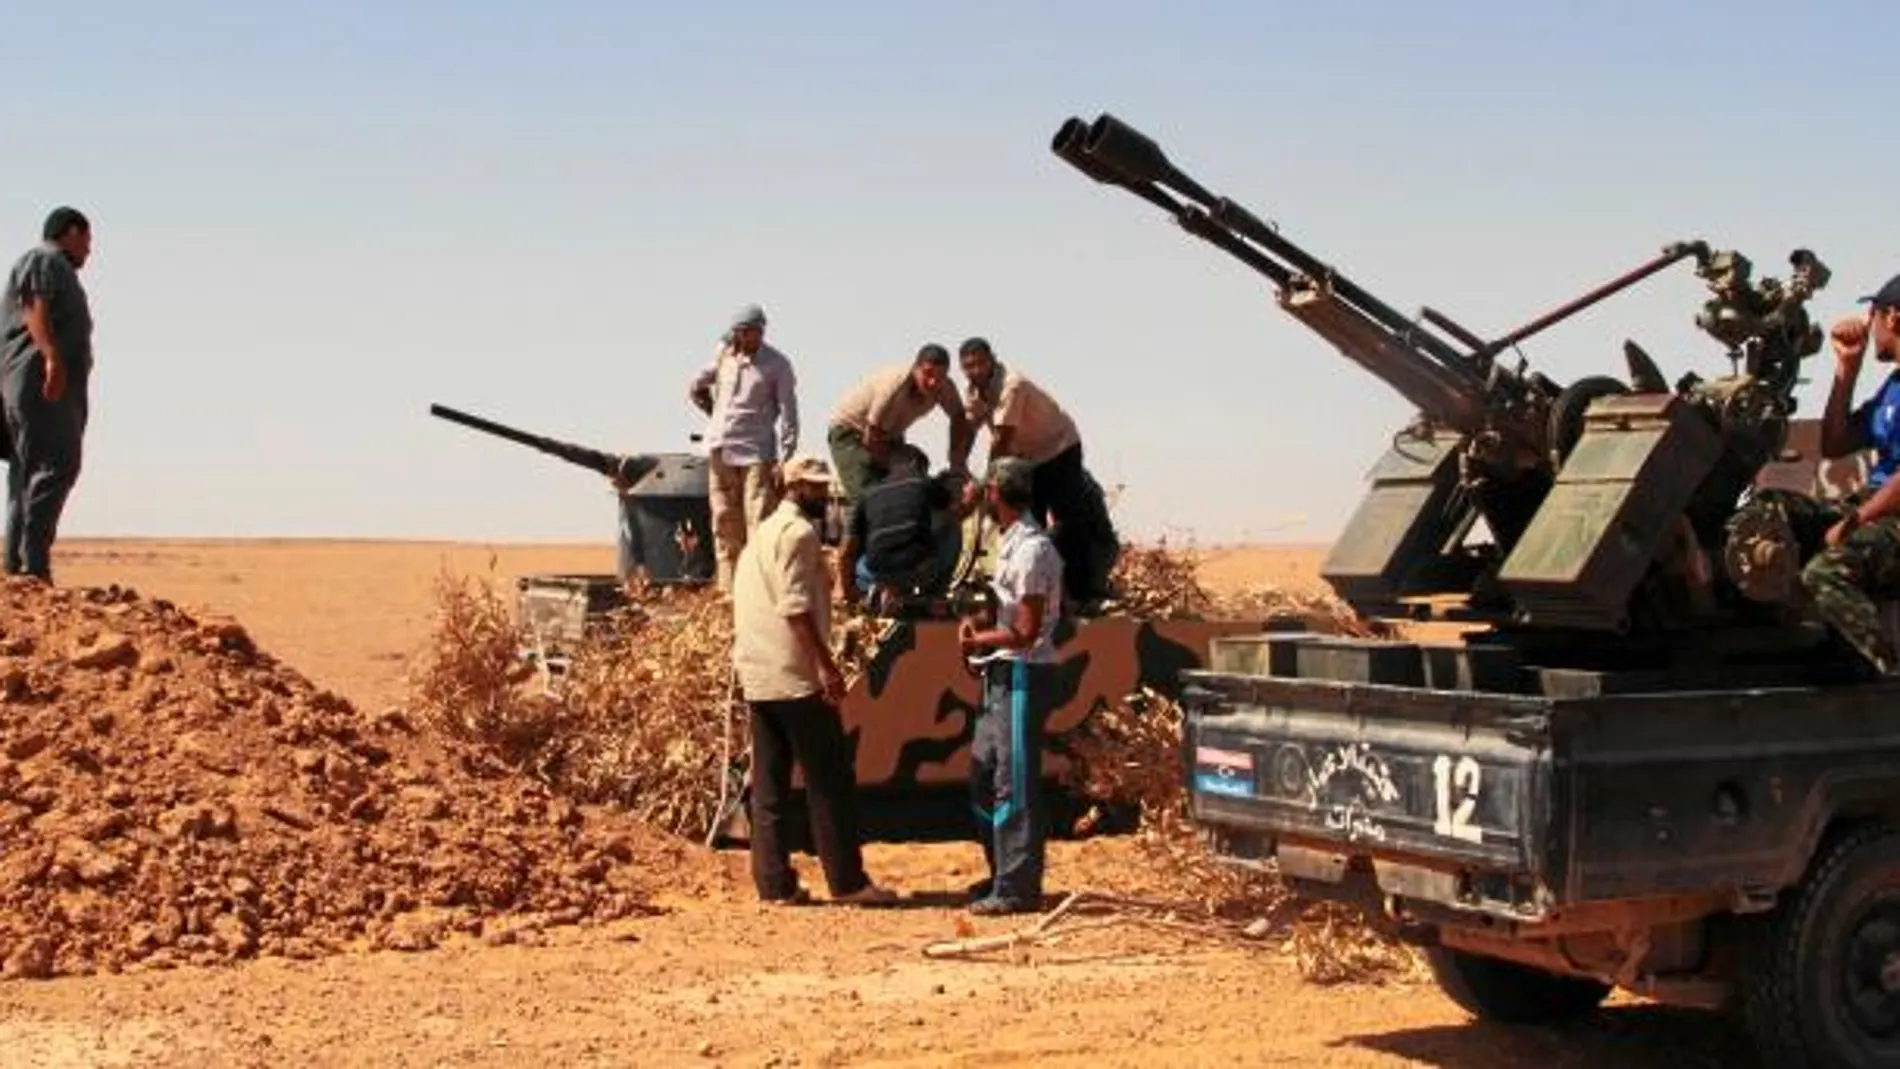 Un grupo de rebeldes a diez kilómetros de Beni Walid, una localidad controlada todavía por los soldados de Gadafi